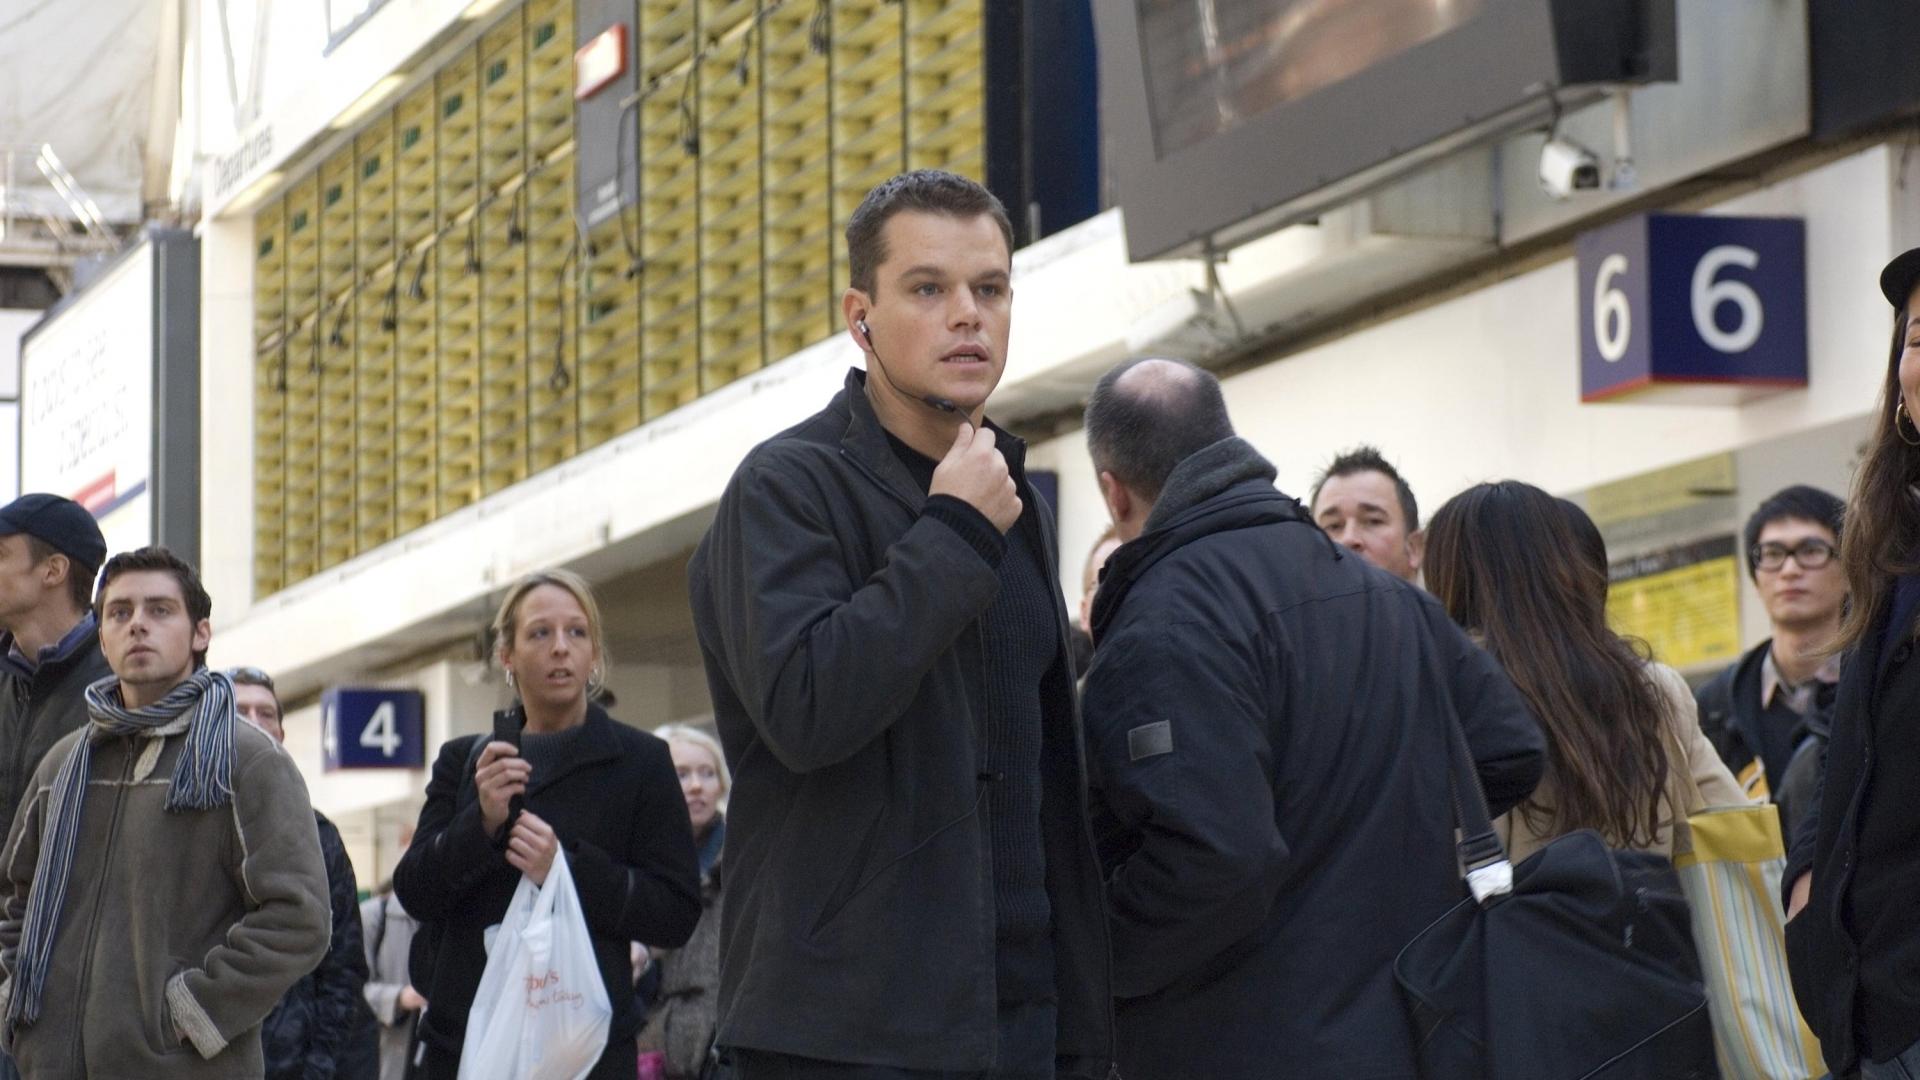 دانلود فیلم The Bourne Ultimatum 2007